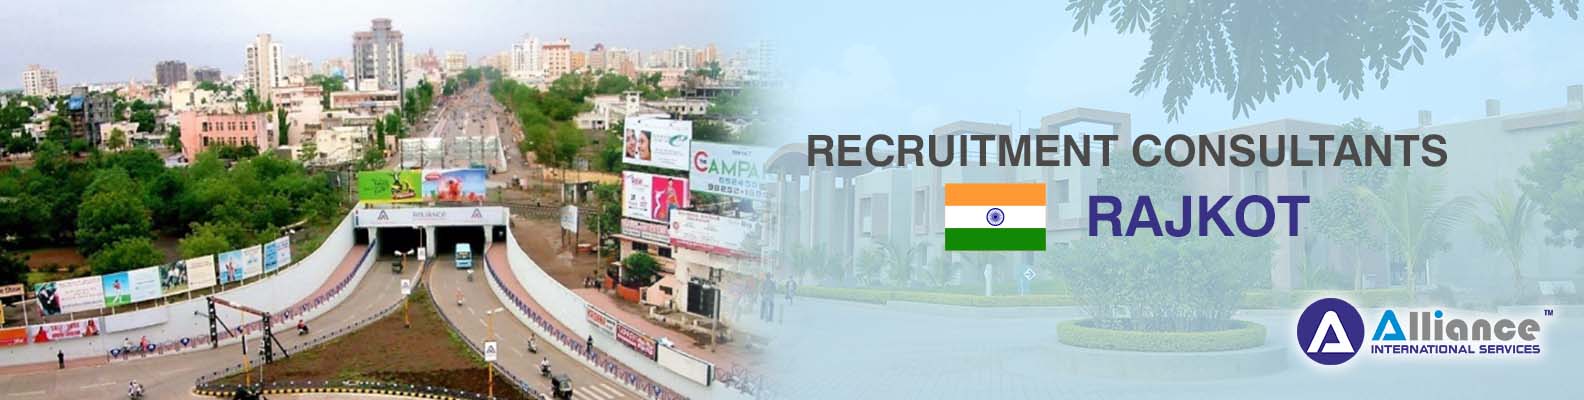 Recruitment Consultants Rajkot